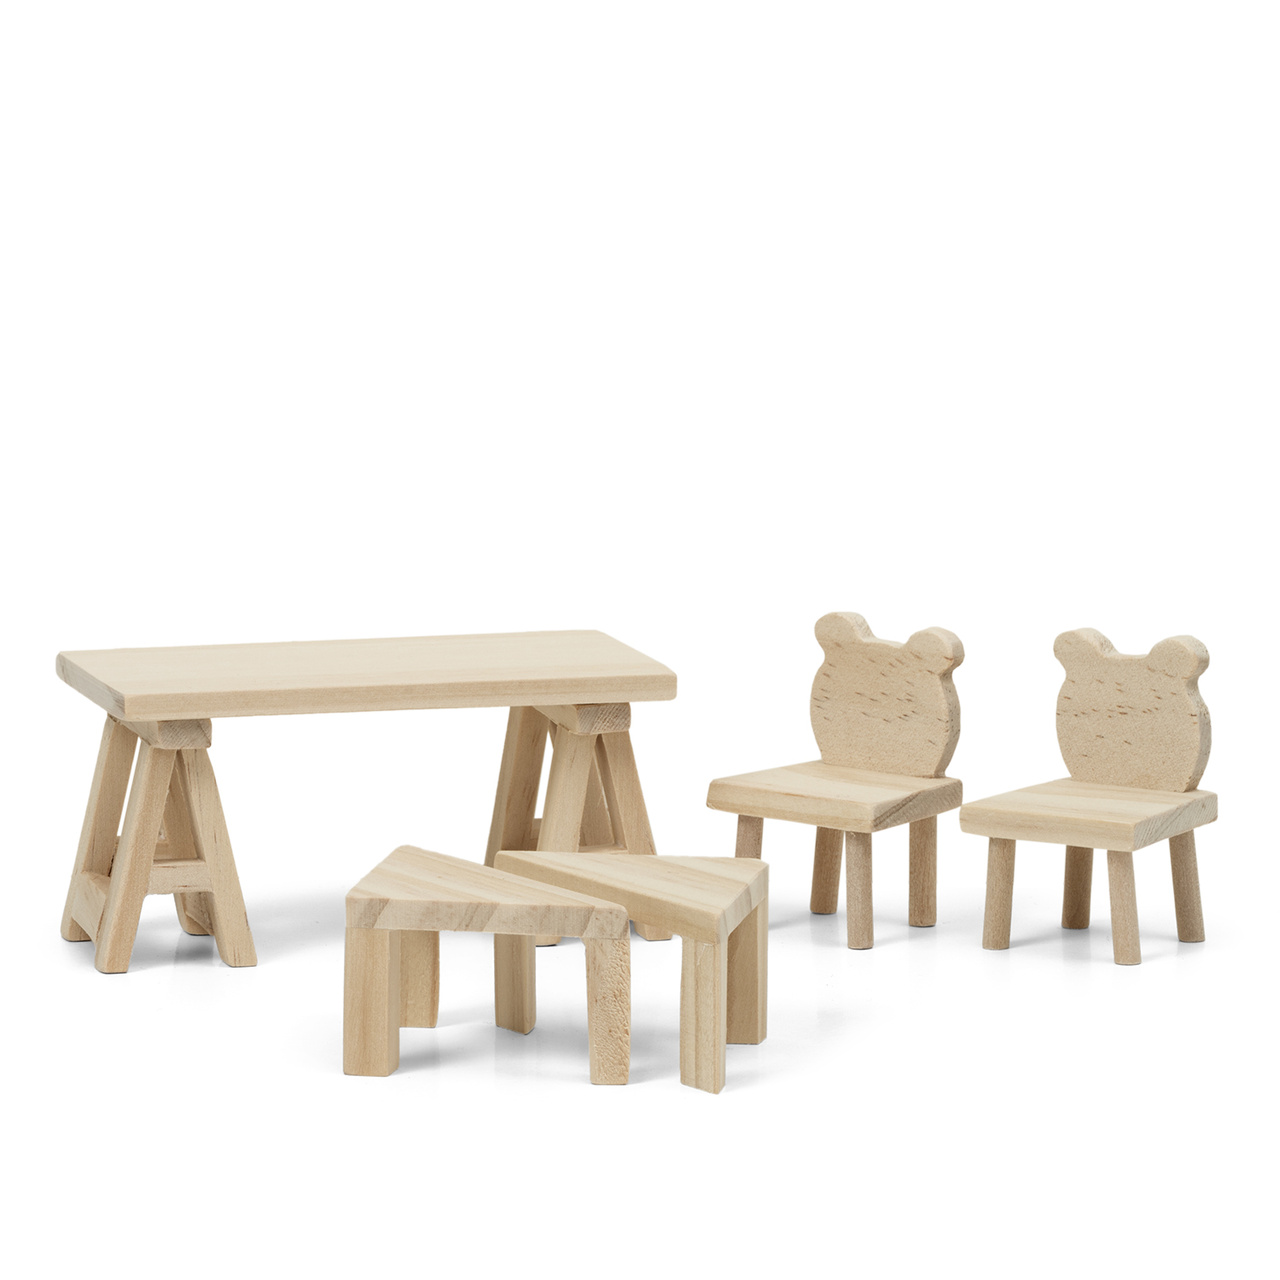 Outlet lundby dukkehusmøbler bord & stoler tre ren